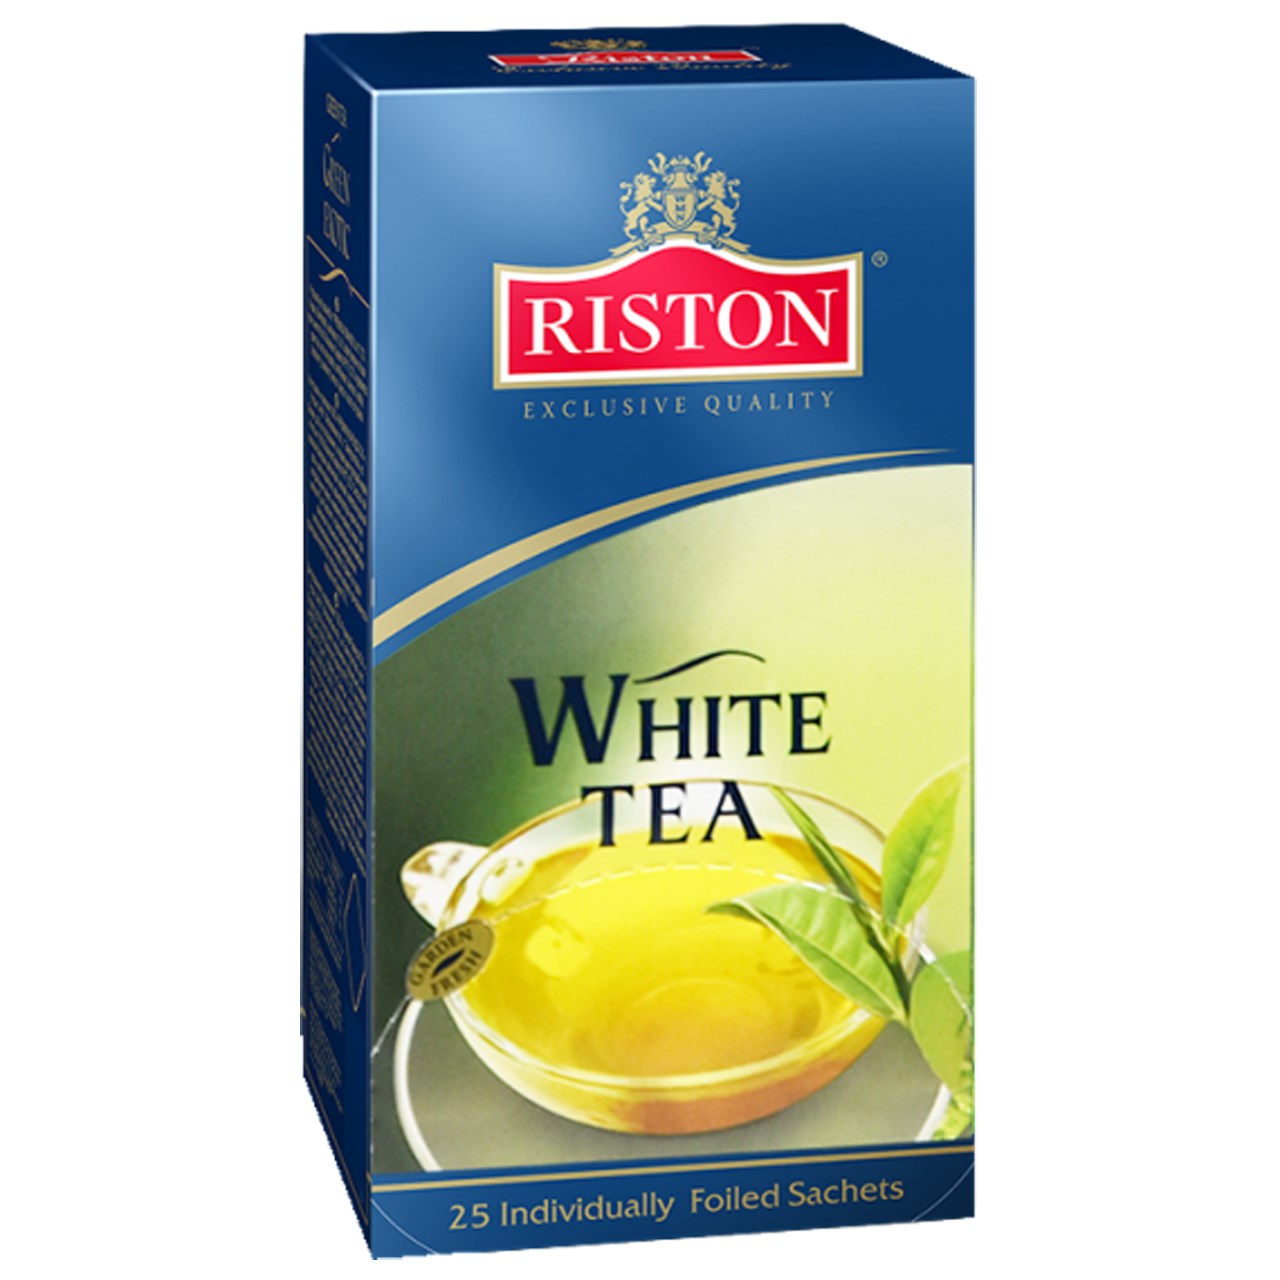 بسته چای کیسه ای ریستون مدل White Tea